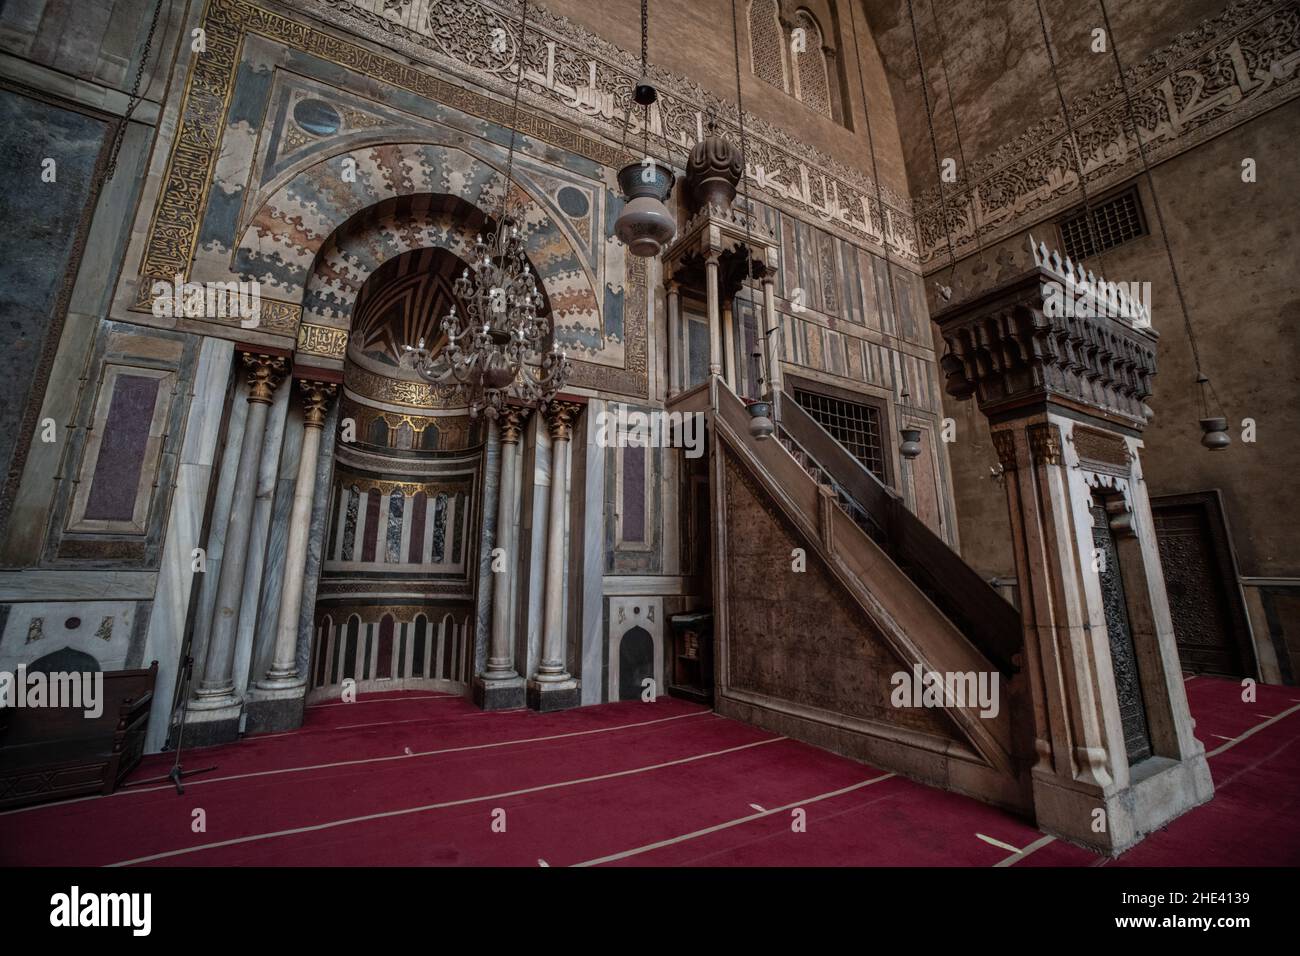 La intrincada qibla de mármol, el mini bar, y el mihrab de uno de los Iwans dentro de la Mezquita madrasa del Sultán Hassan en El Cairo, Egipto. Un hito histórico. Foto de stock